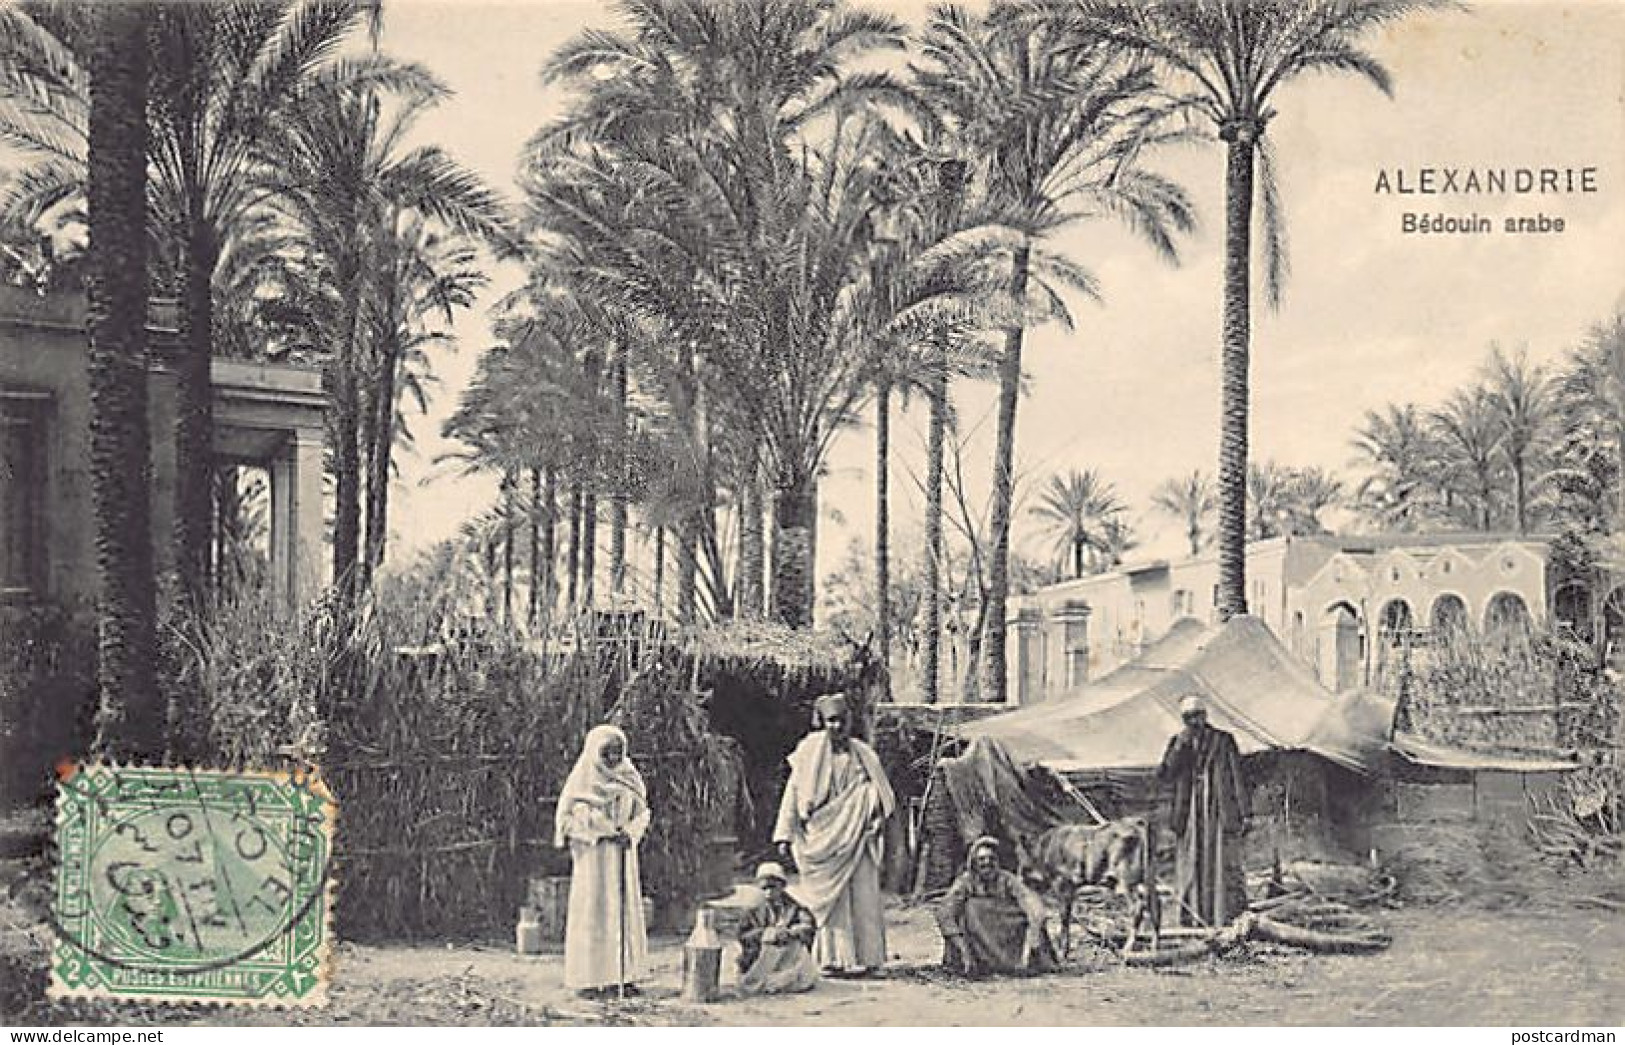 Egypt - ALEXANDRIA - Arab Bedouin - Publ. Dr. Trenkler Co. Ala. 36 - Alexandrie